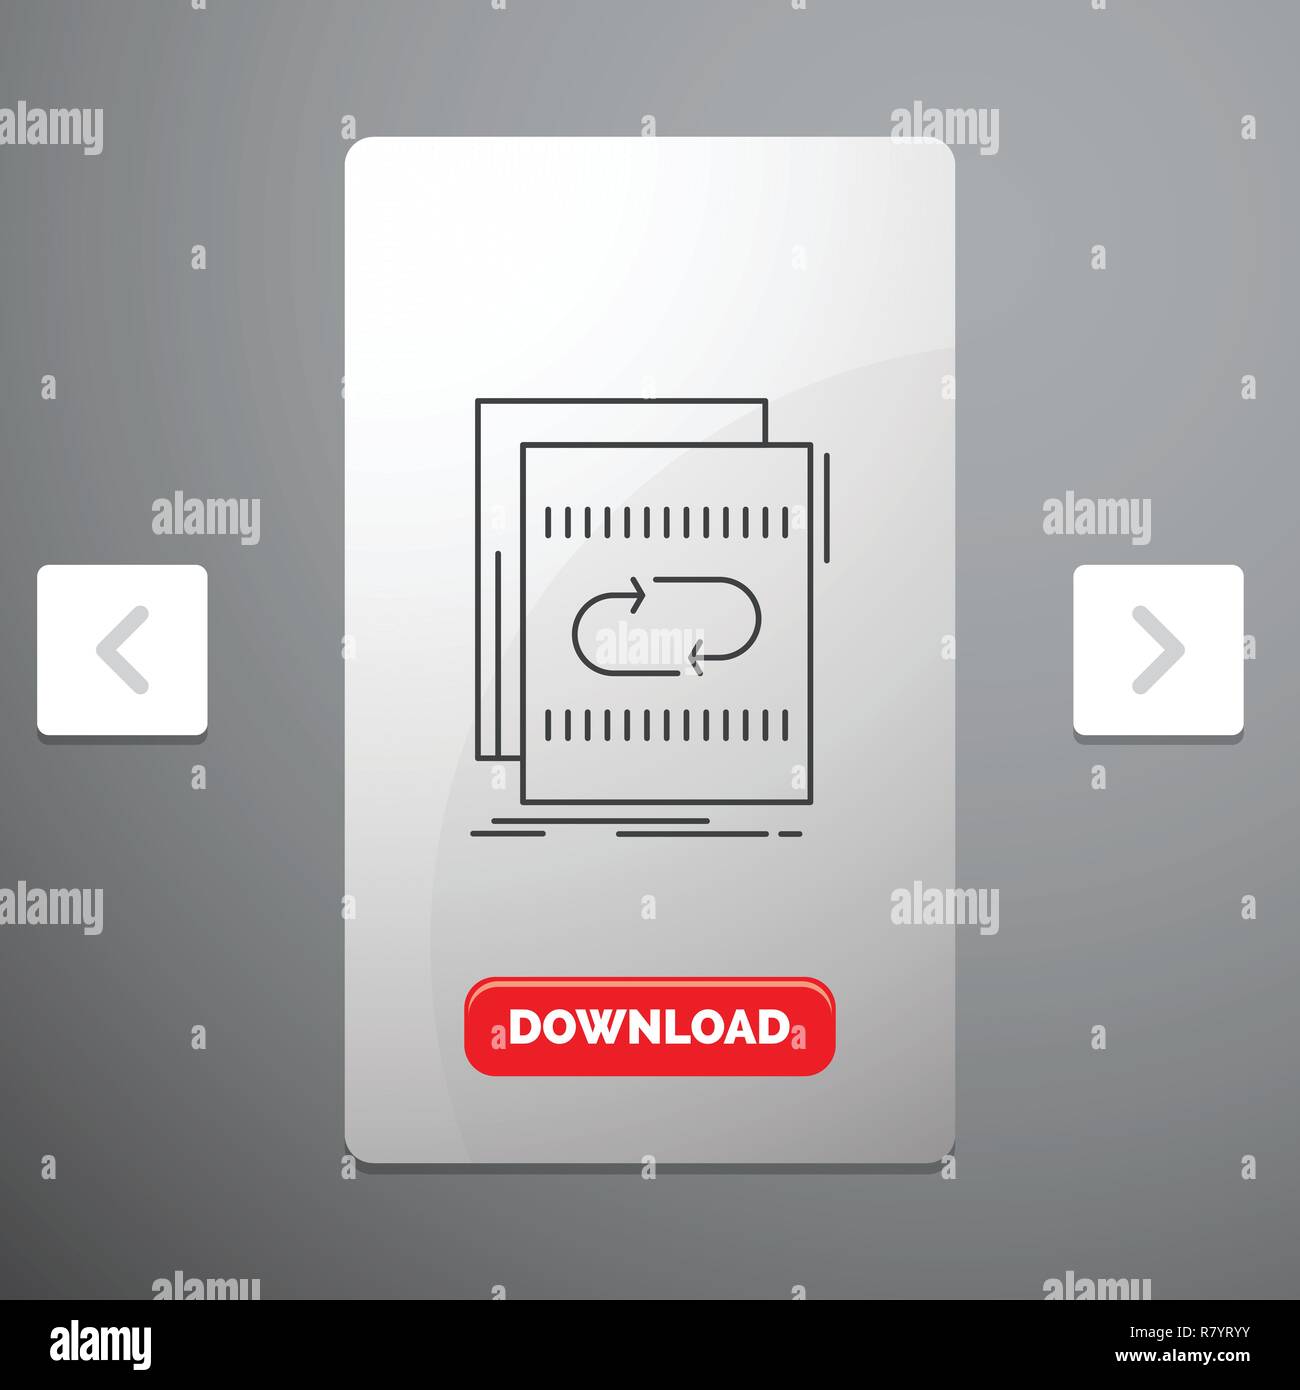 L'audio, fichier, boucle, mix, l'icône de la ligne du son dans la pagination Carousal Slider Design & Red bouton Download Illustration de Vecteur